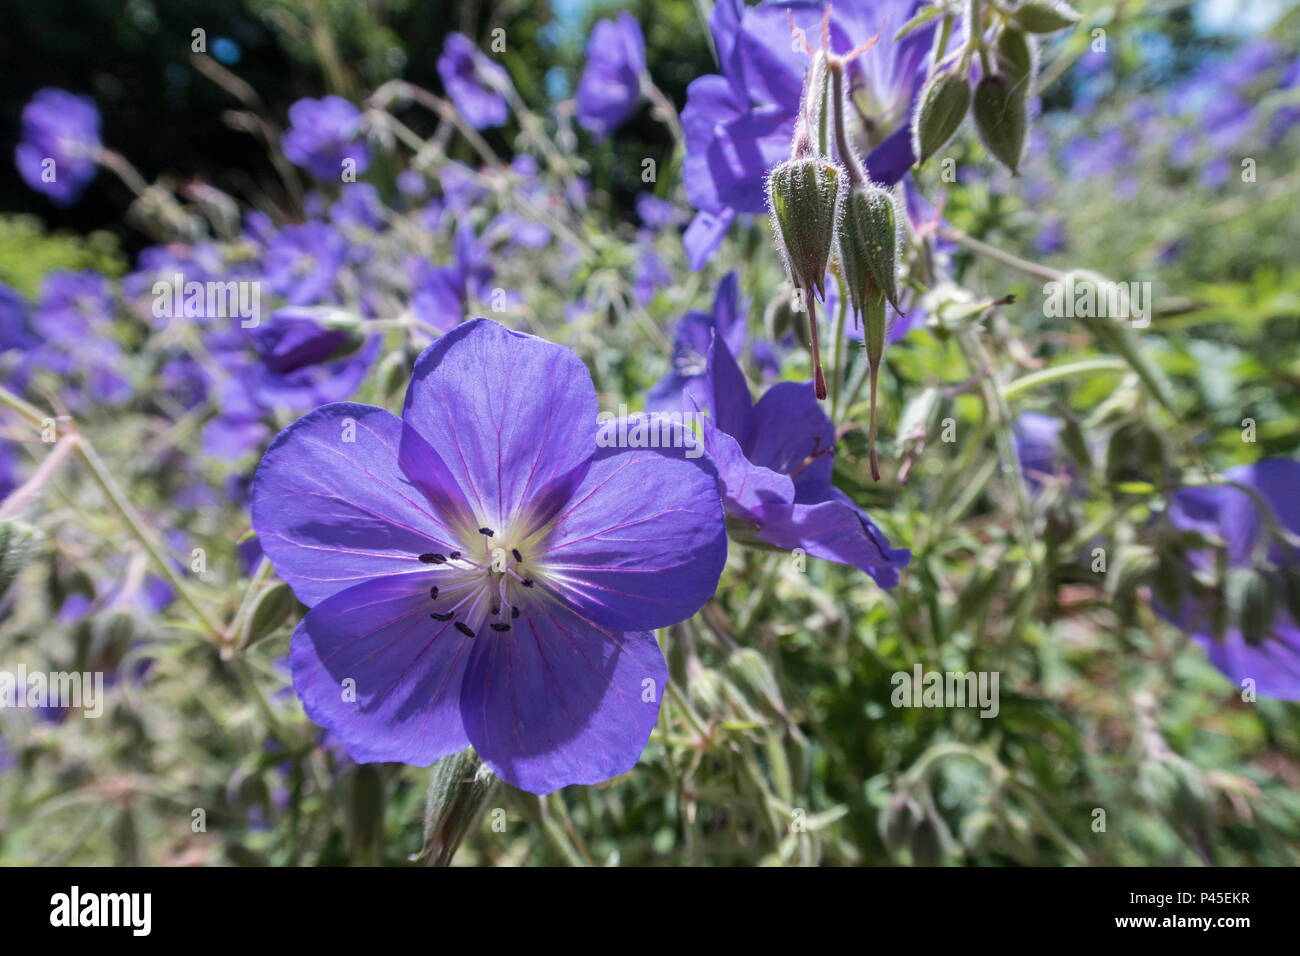 Geranium Orion,  cranesbill 'Orion', a blue flowering geranium plant. Stock Photo